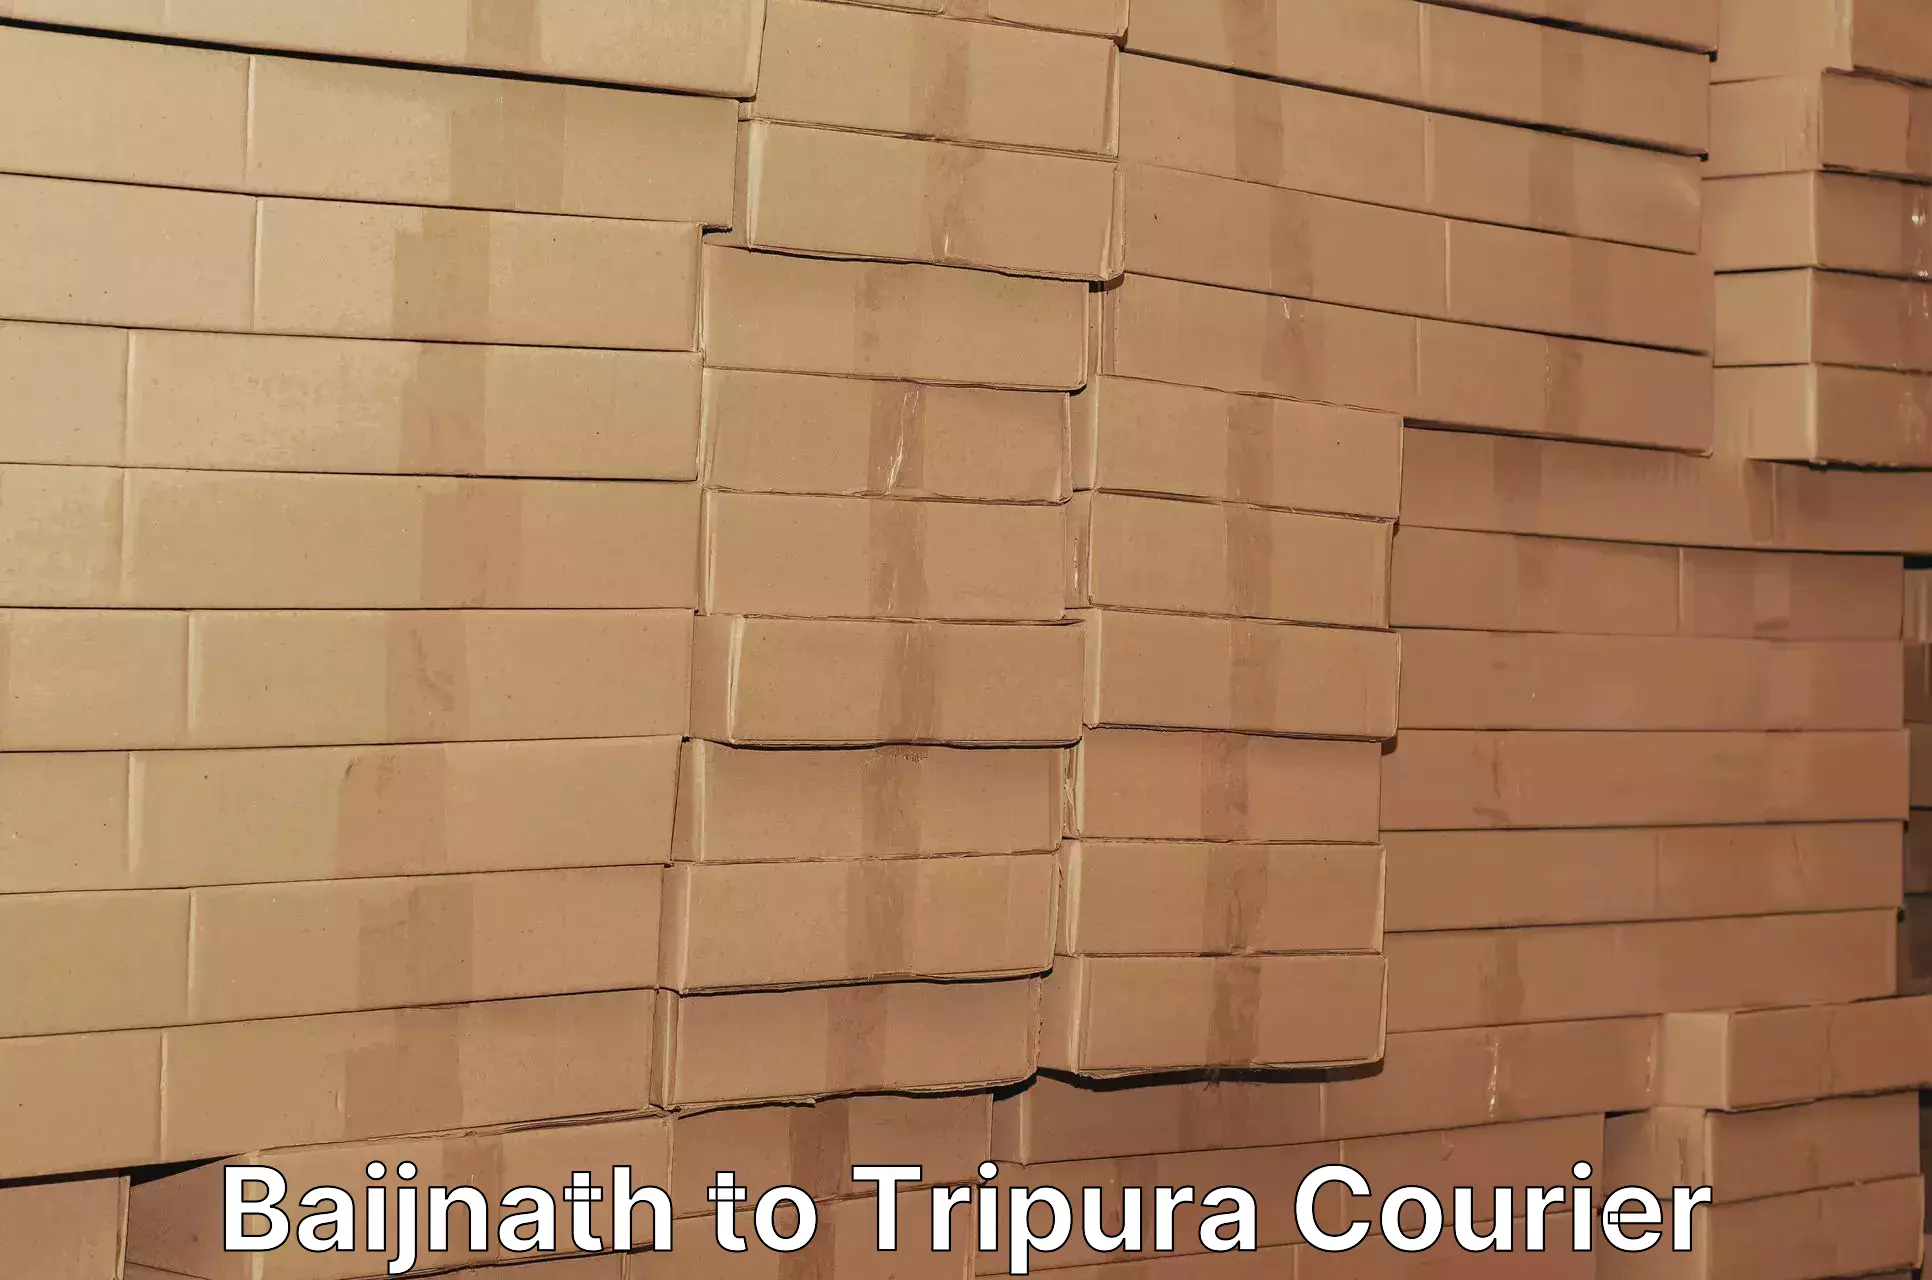 Efficient parcel service Baijnath to Udaipur Tripura